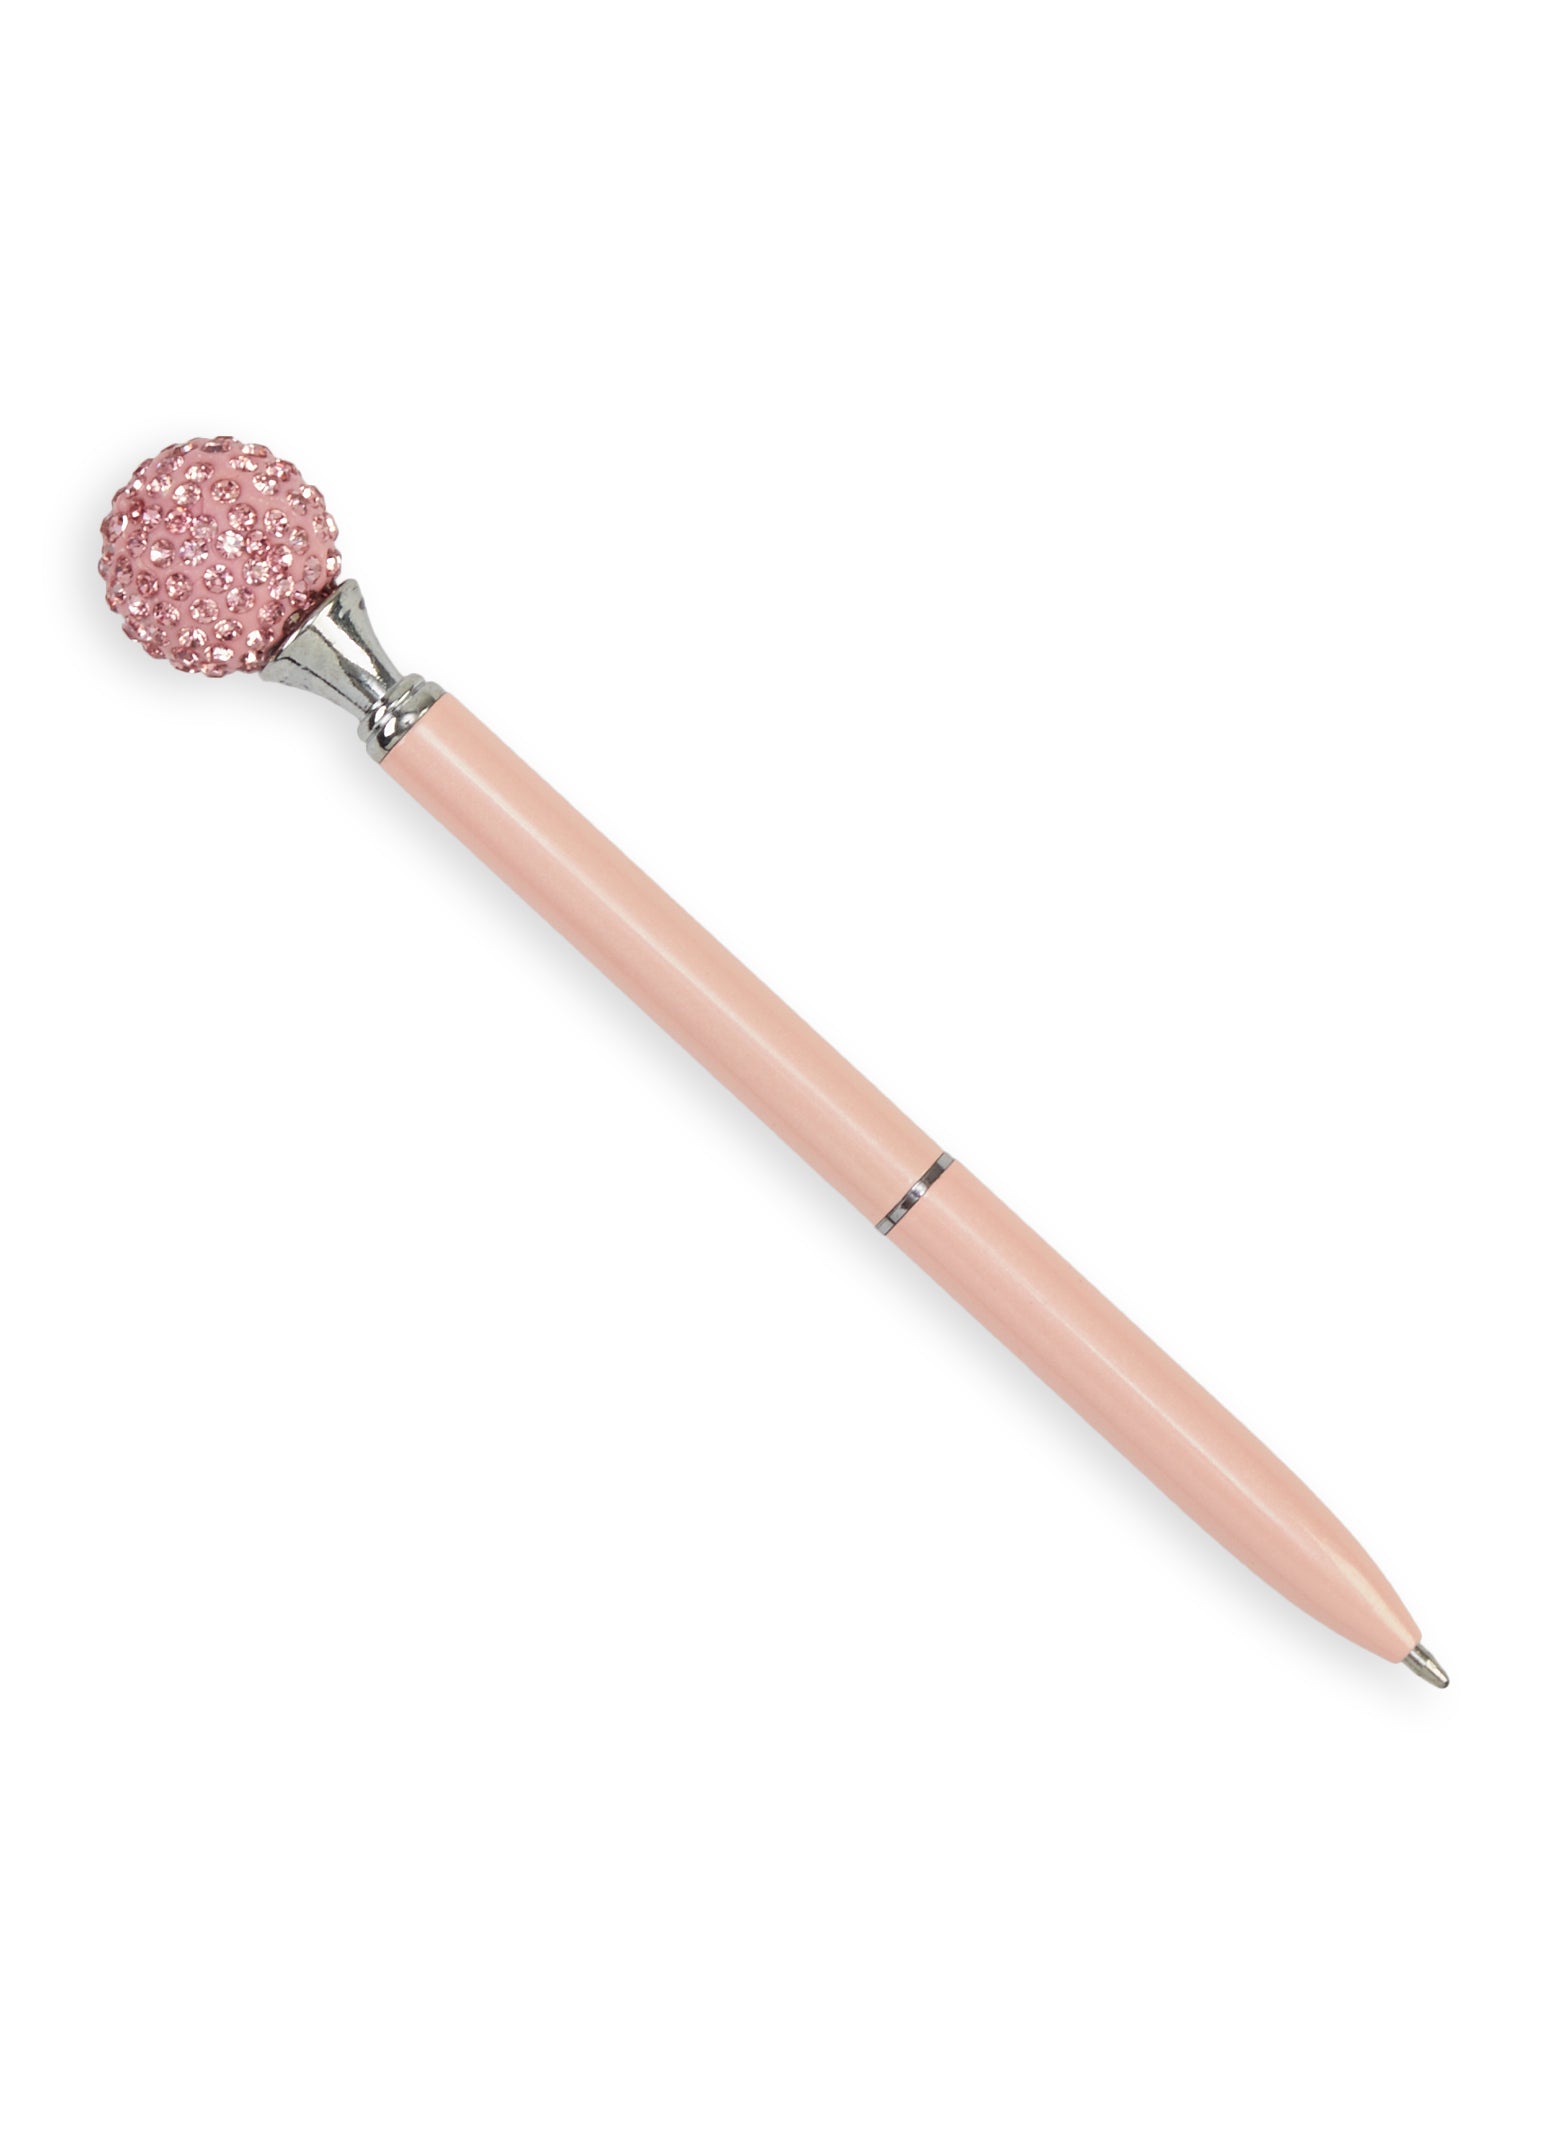 Jeweled Writing Pen - Pink + Diamond